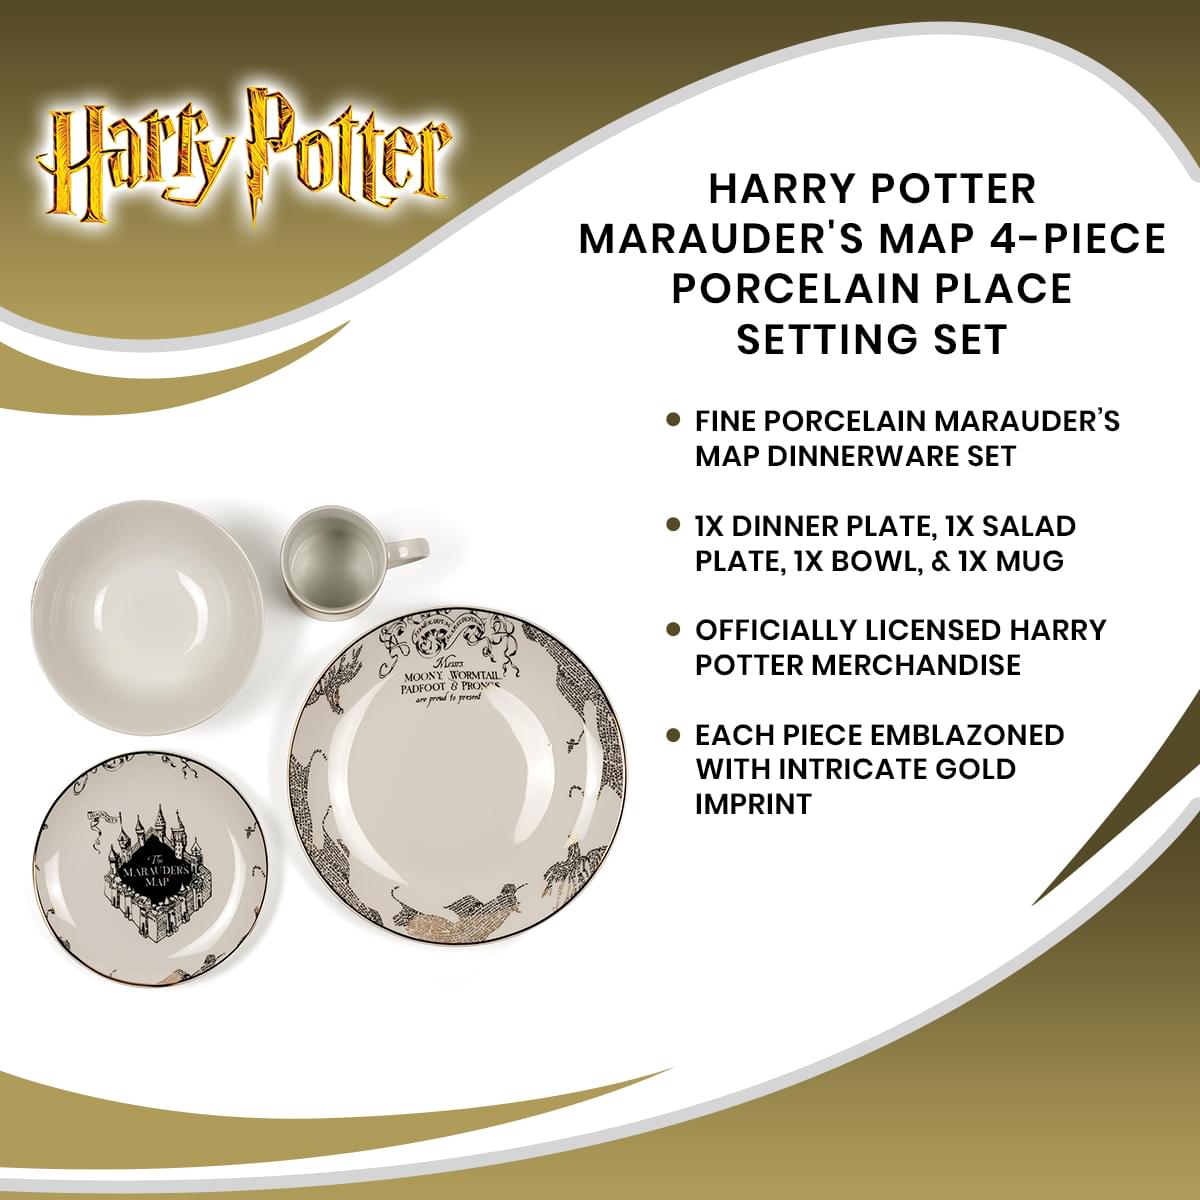 Harry Potter Marauder's Map 4-Piece Porcelain Place Setting Set